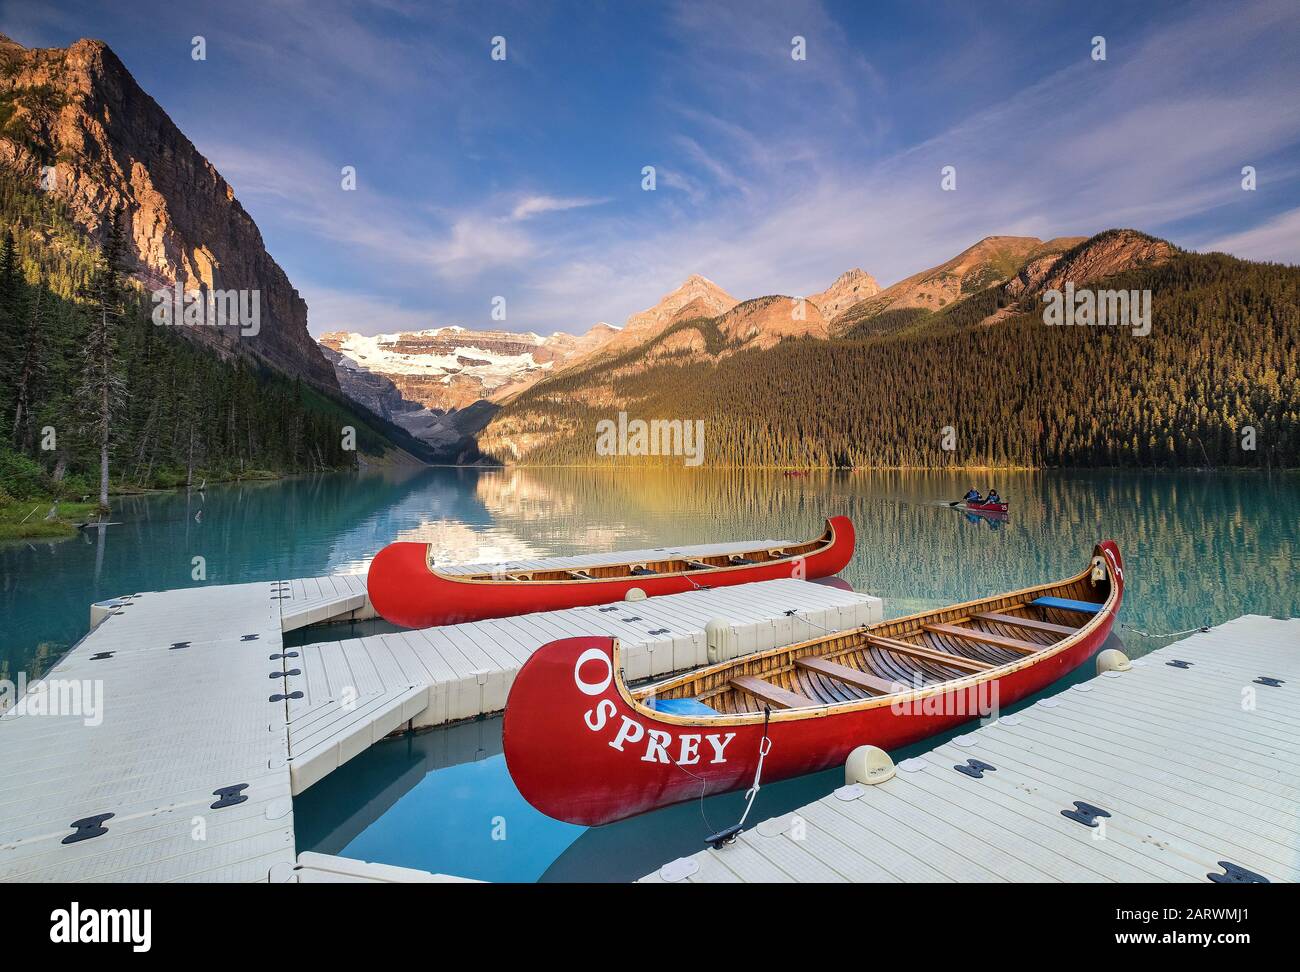 Regreso en canoa al embarcadero en Sunrise on Lake Louise, respaldado por el glaciar Victoria, el lago Louise, el Parque Nacional Banff, Alberta, Canadá Foto de stock